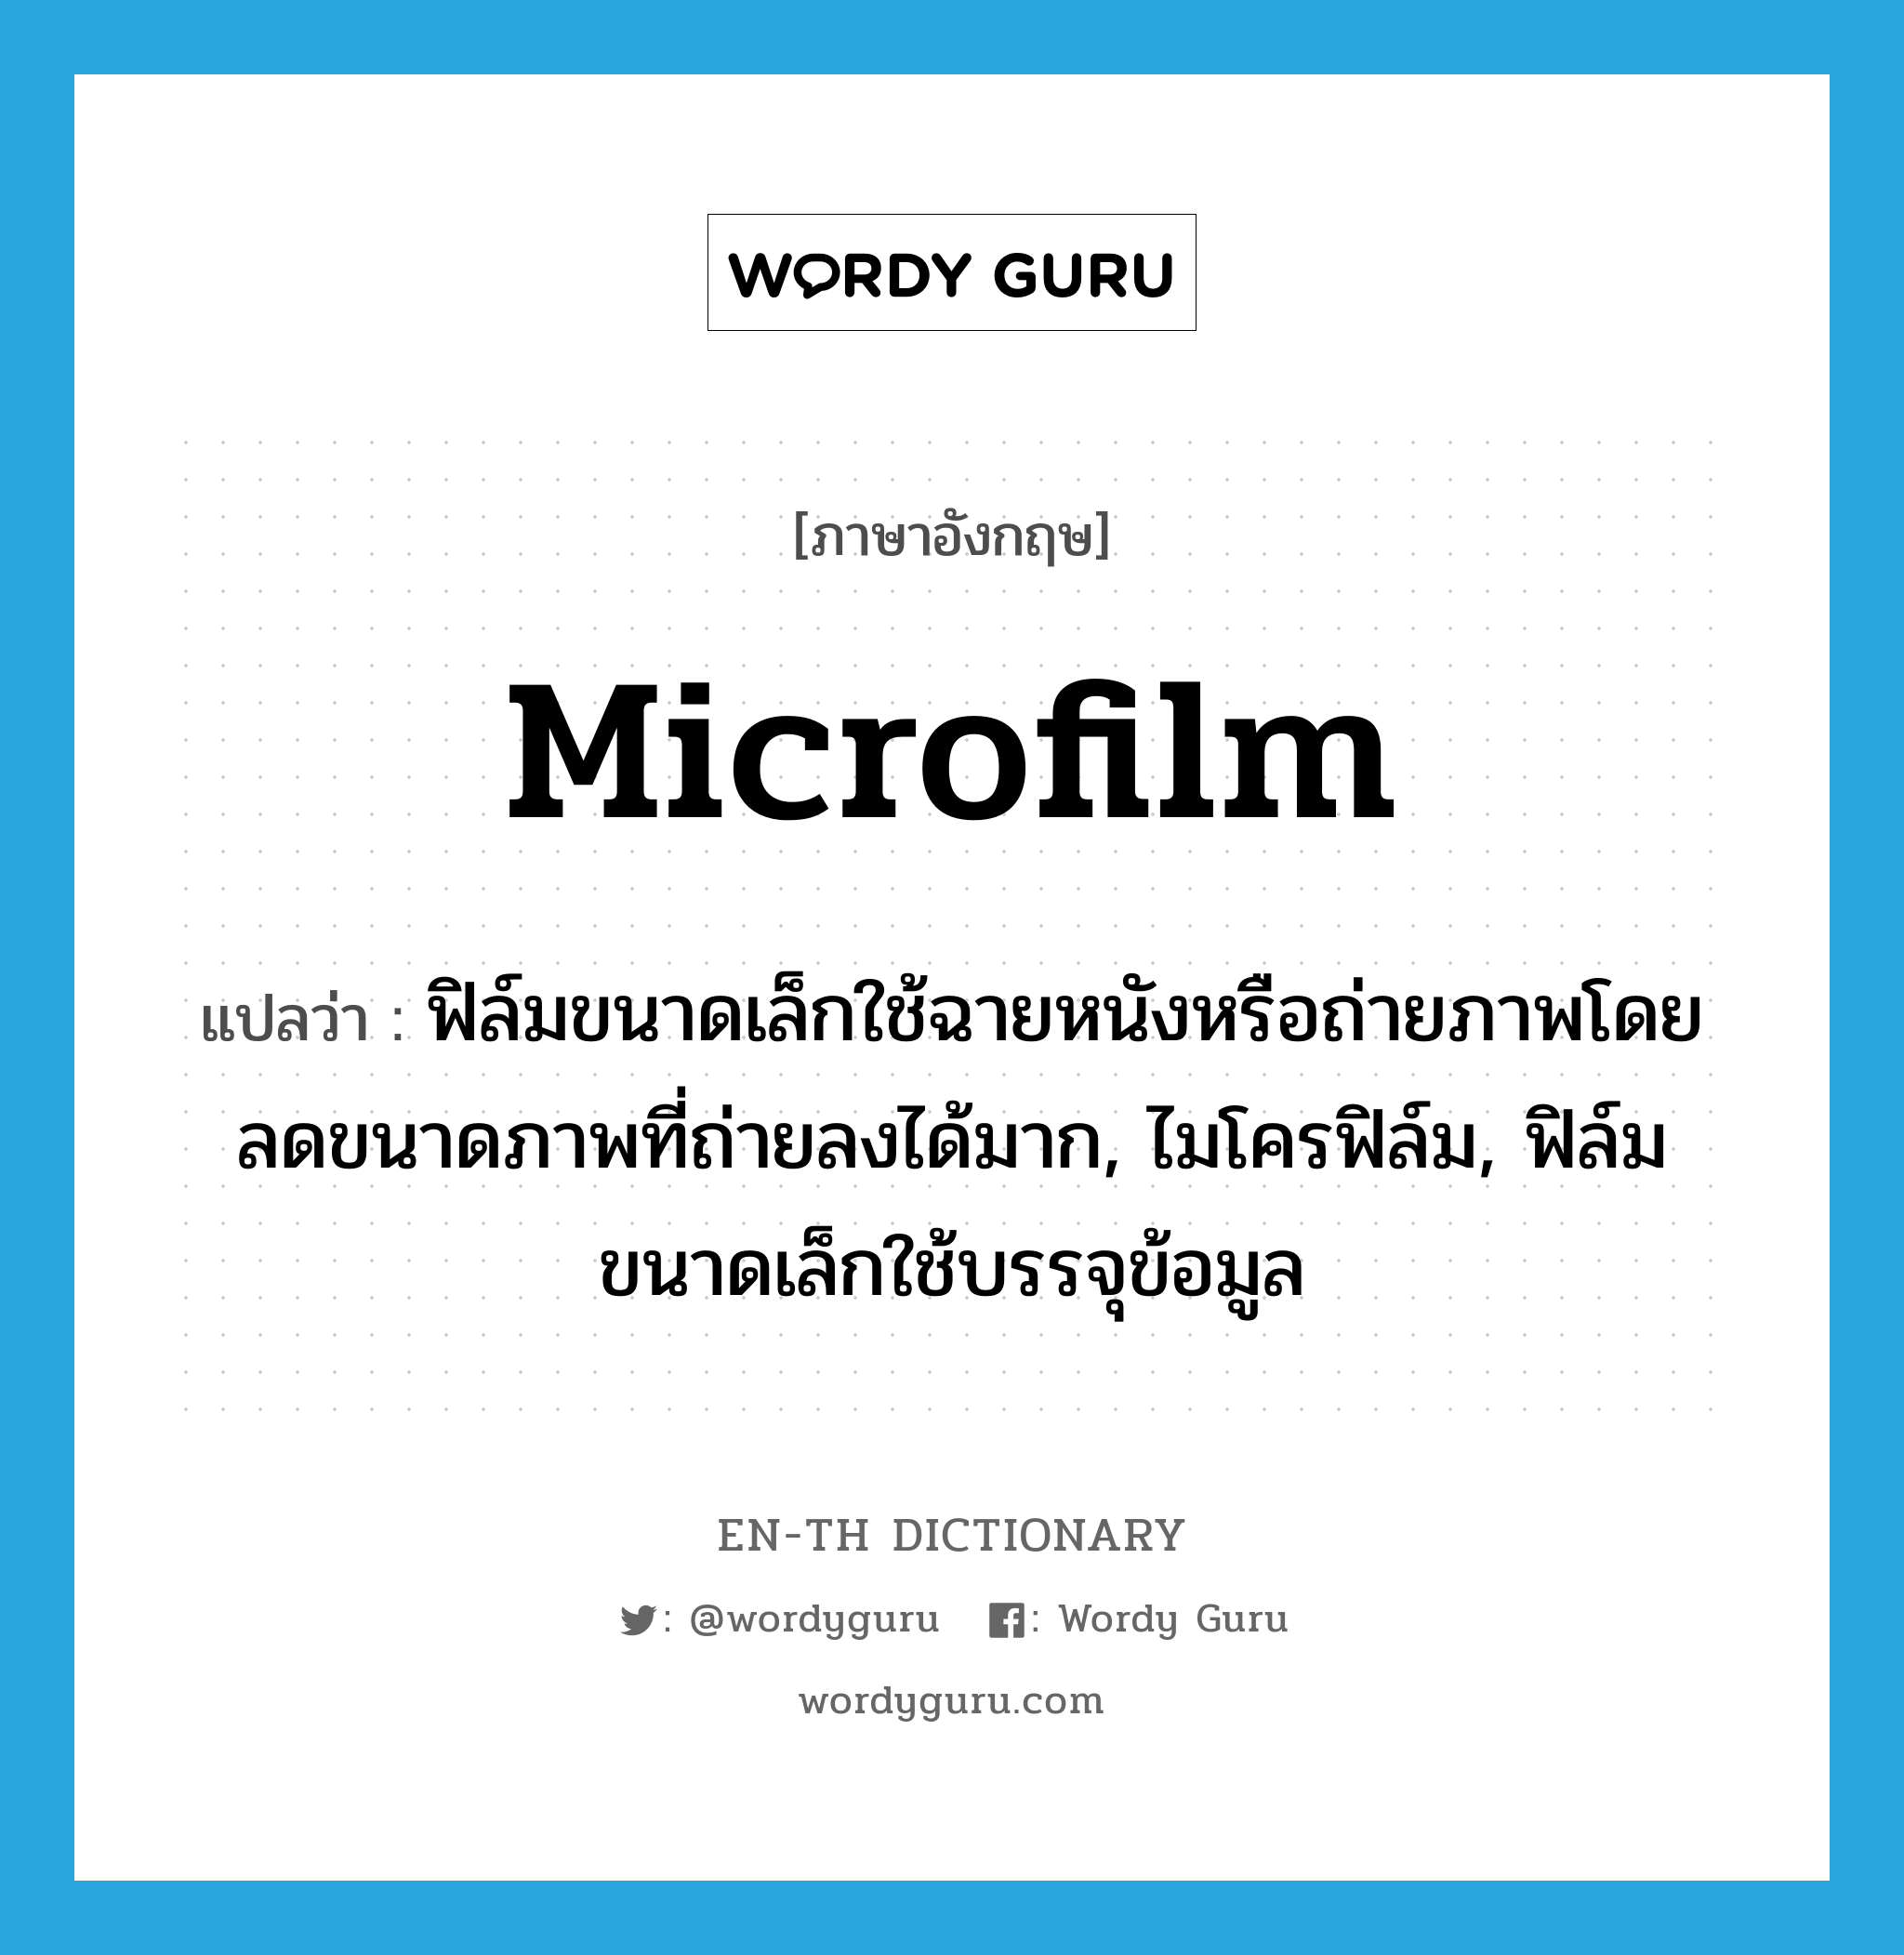 microfilm แปลว่า?, คำศัพท์ภาษาอังกฤษ microfilm แปลว่า ฟิล์มขนาดเล็กใช้ฉายหนังหรือถ่ายภาพโดยลดขนาดภาพที่ถ่ายลงได้มาก, ไมโครฟิล์ม, ฟิล์มขนาดเล็กใช้บรรจุข้อมูล ประเภท N หมวด N